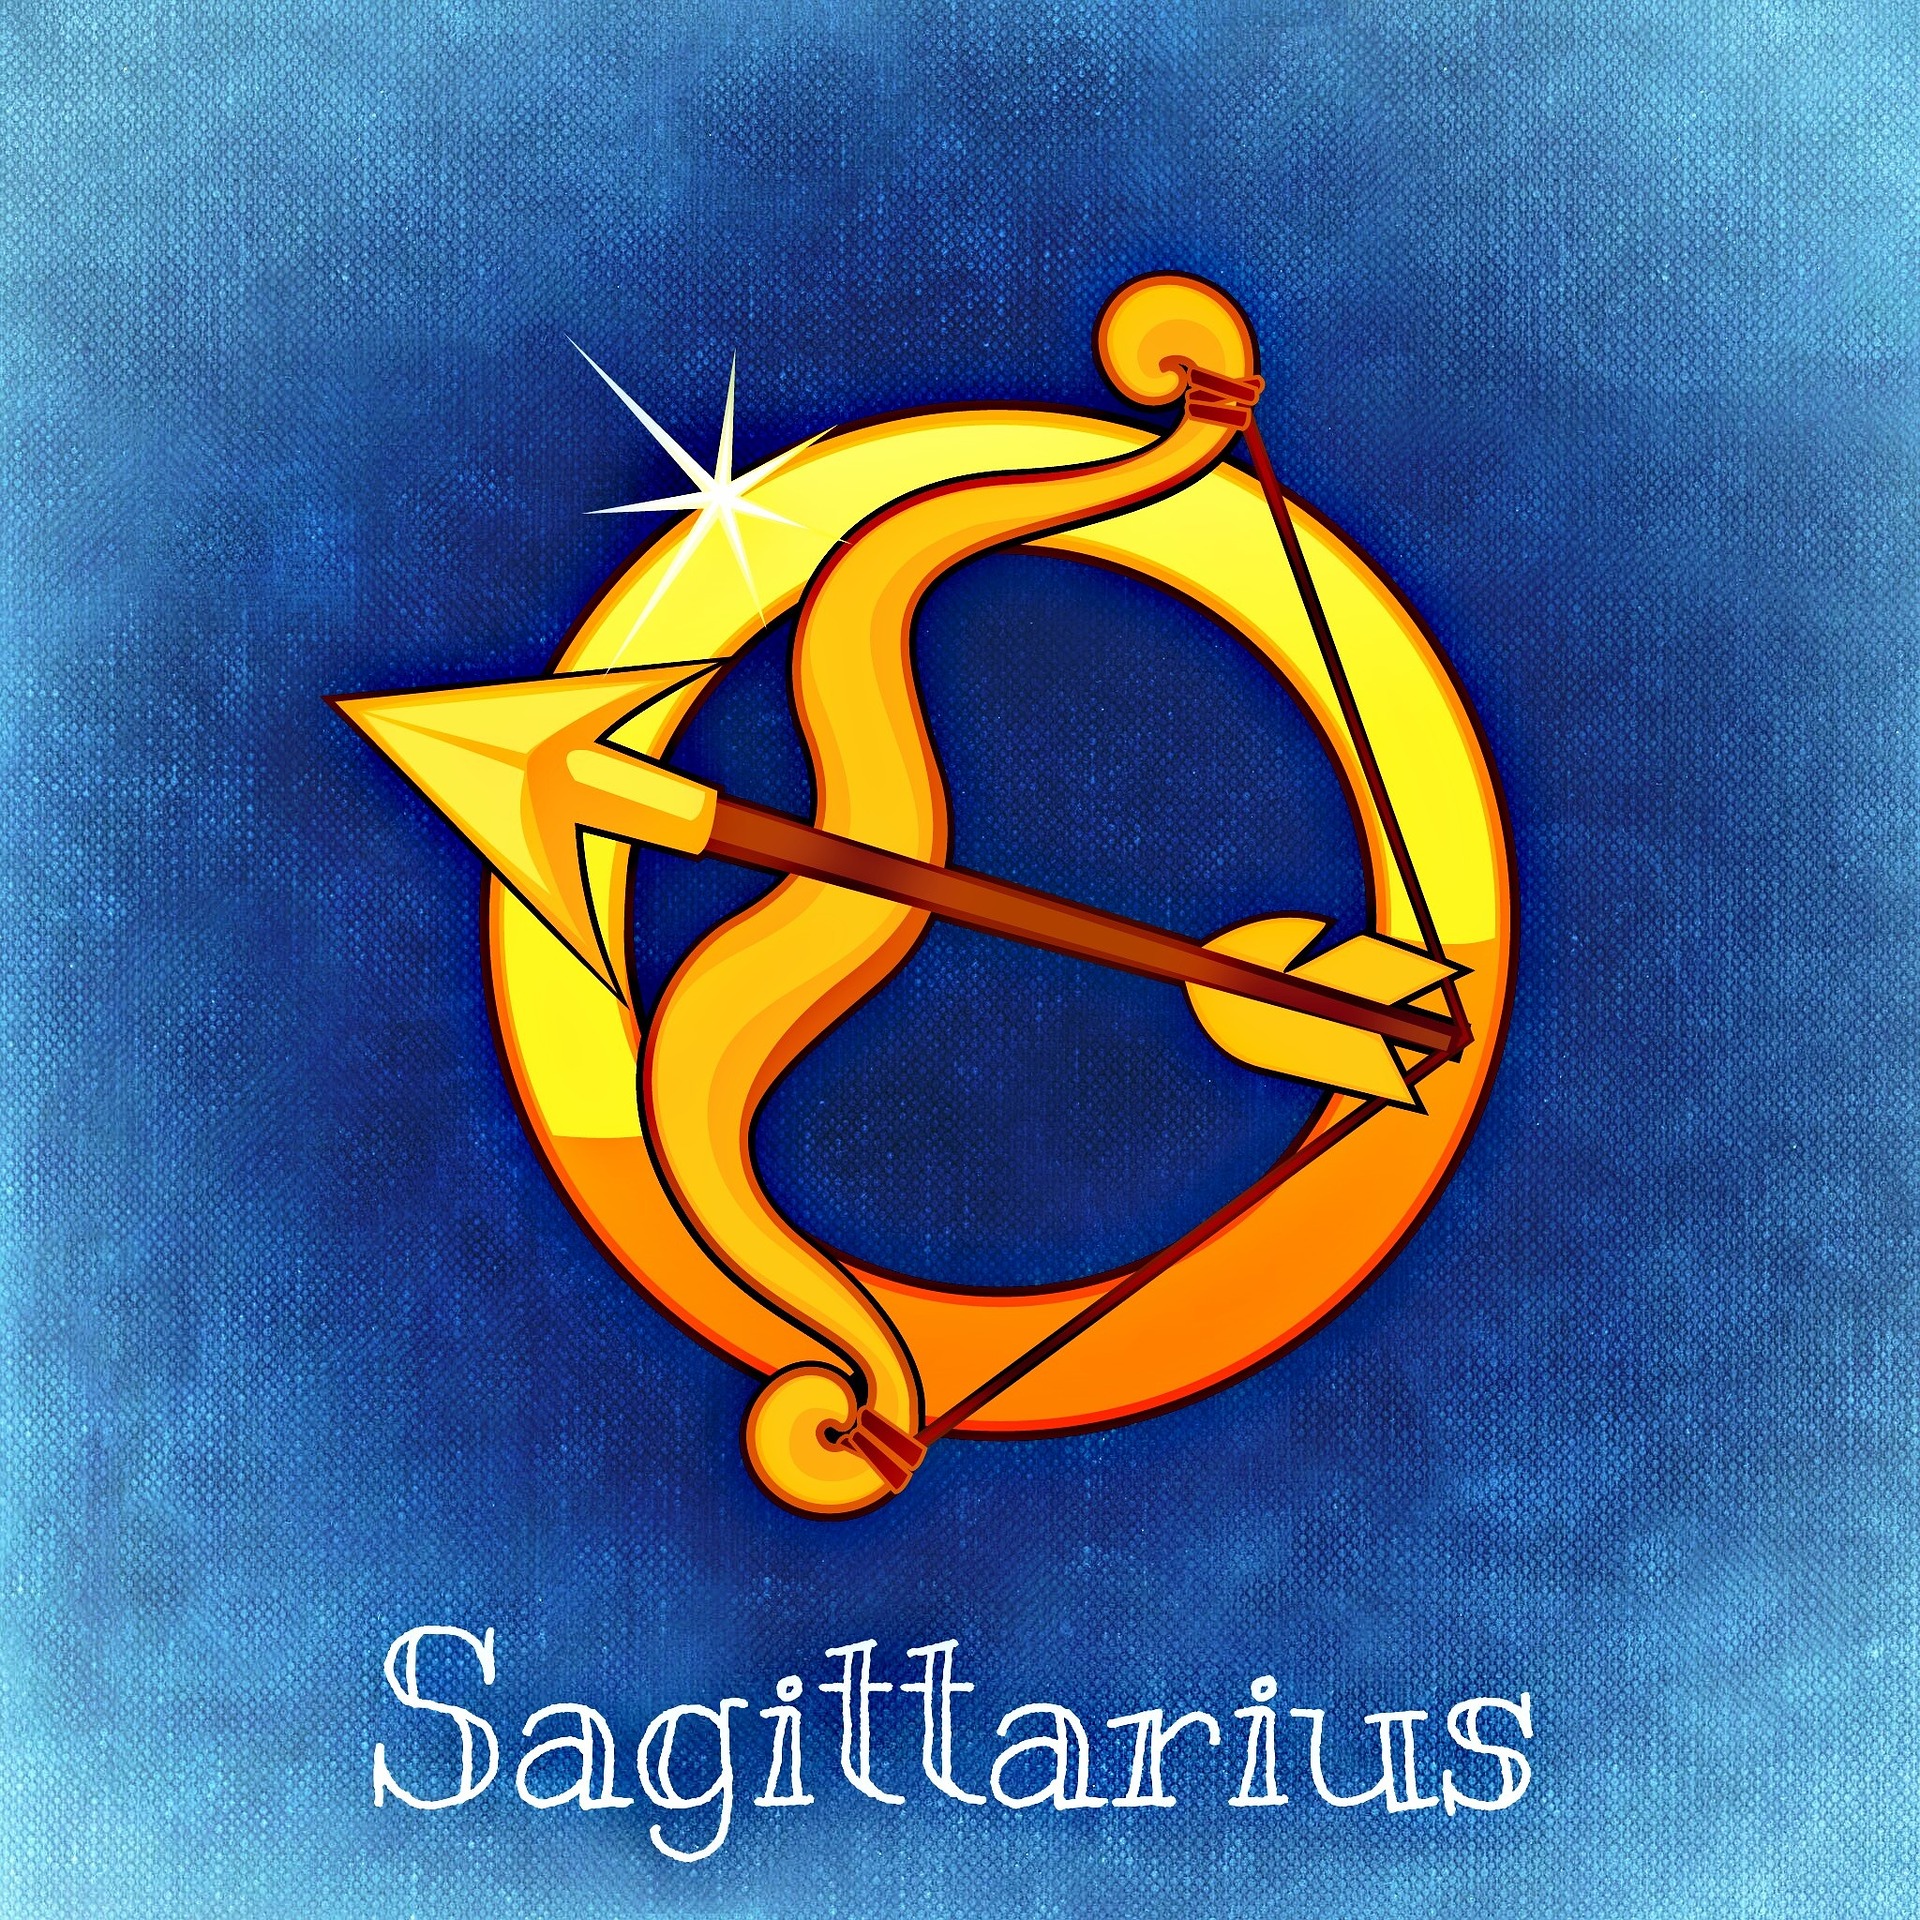 Symbol of a bow representing sagittarius